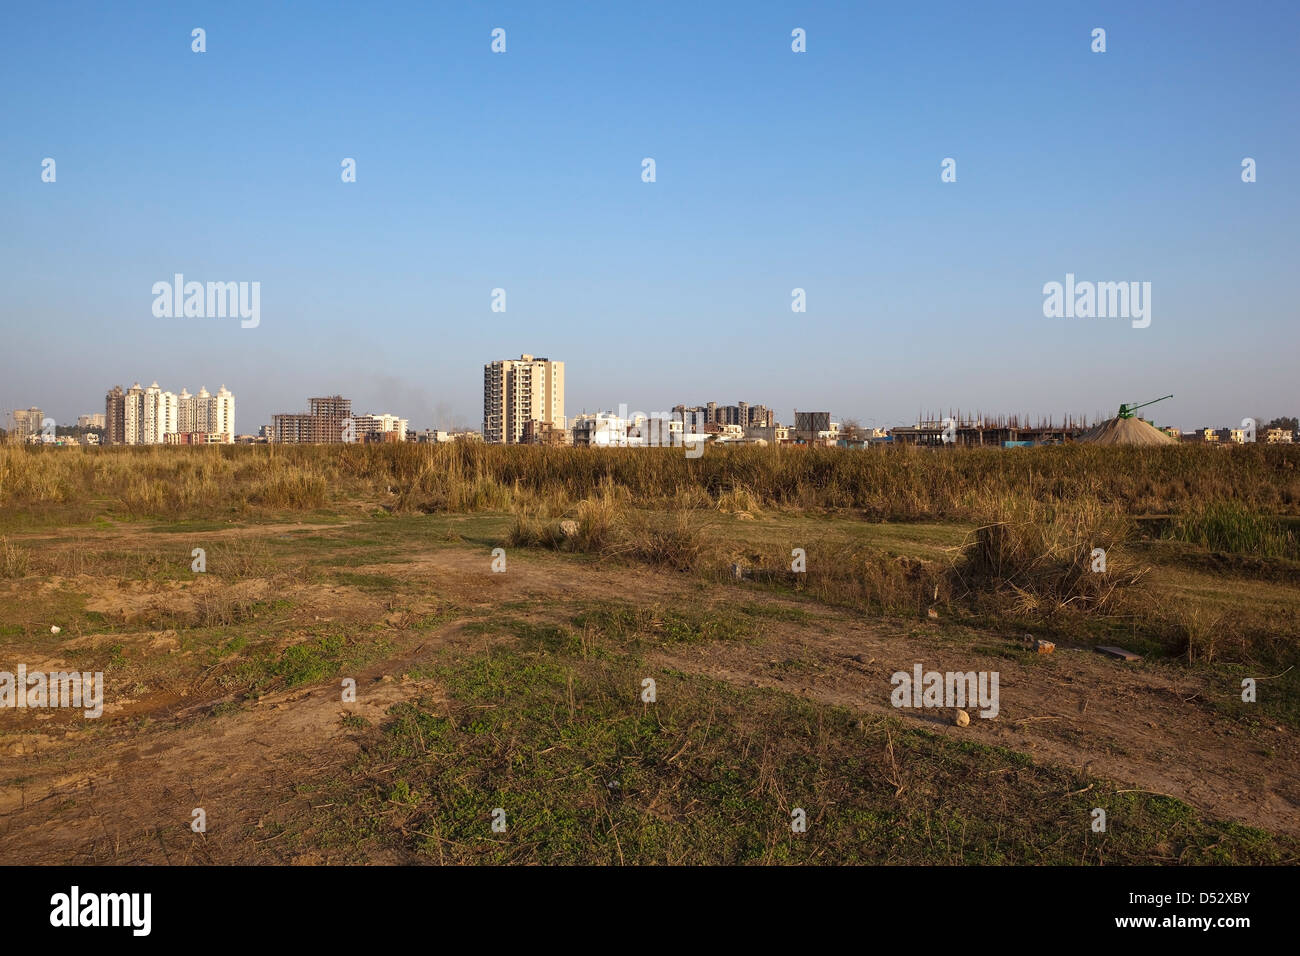 El desarrollo urbano en antiguos terrenos agrícolas en las afueras de la ciudad de Chandigarh, en el distrito de Mohali, Punjab, India Foto de stock